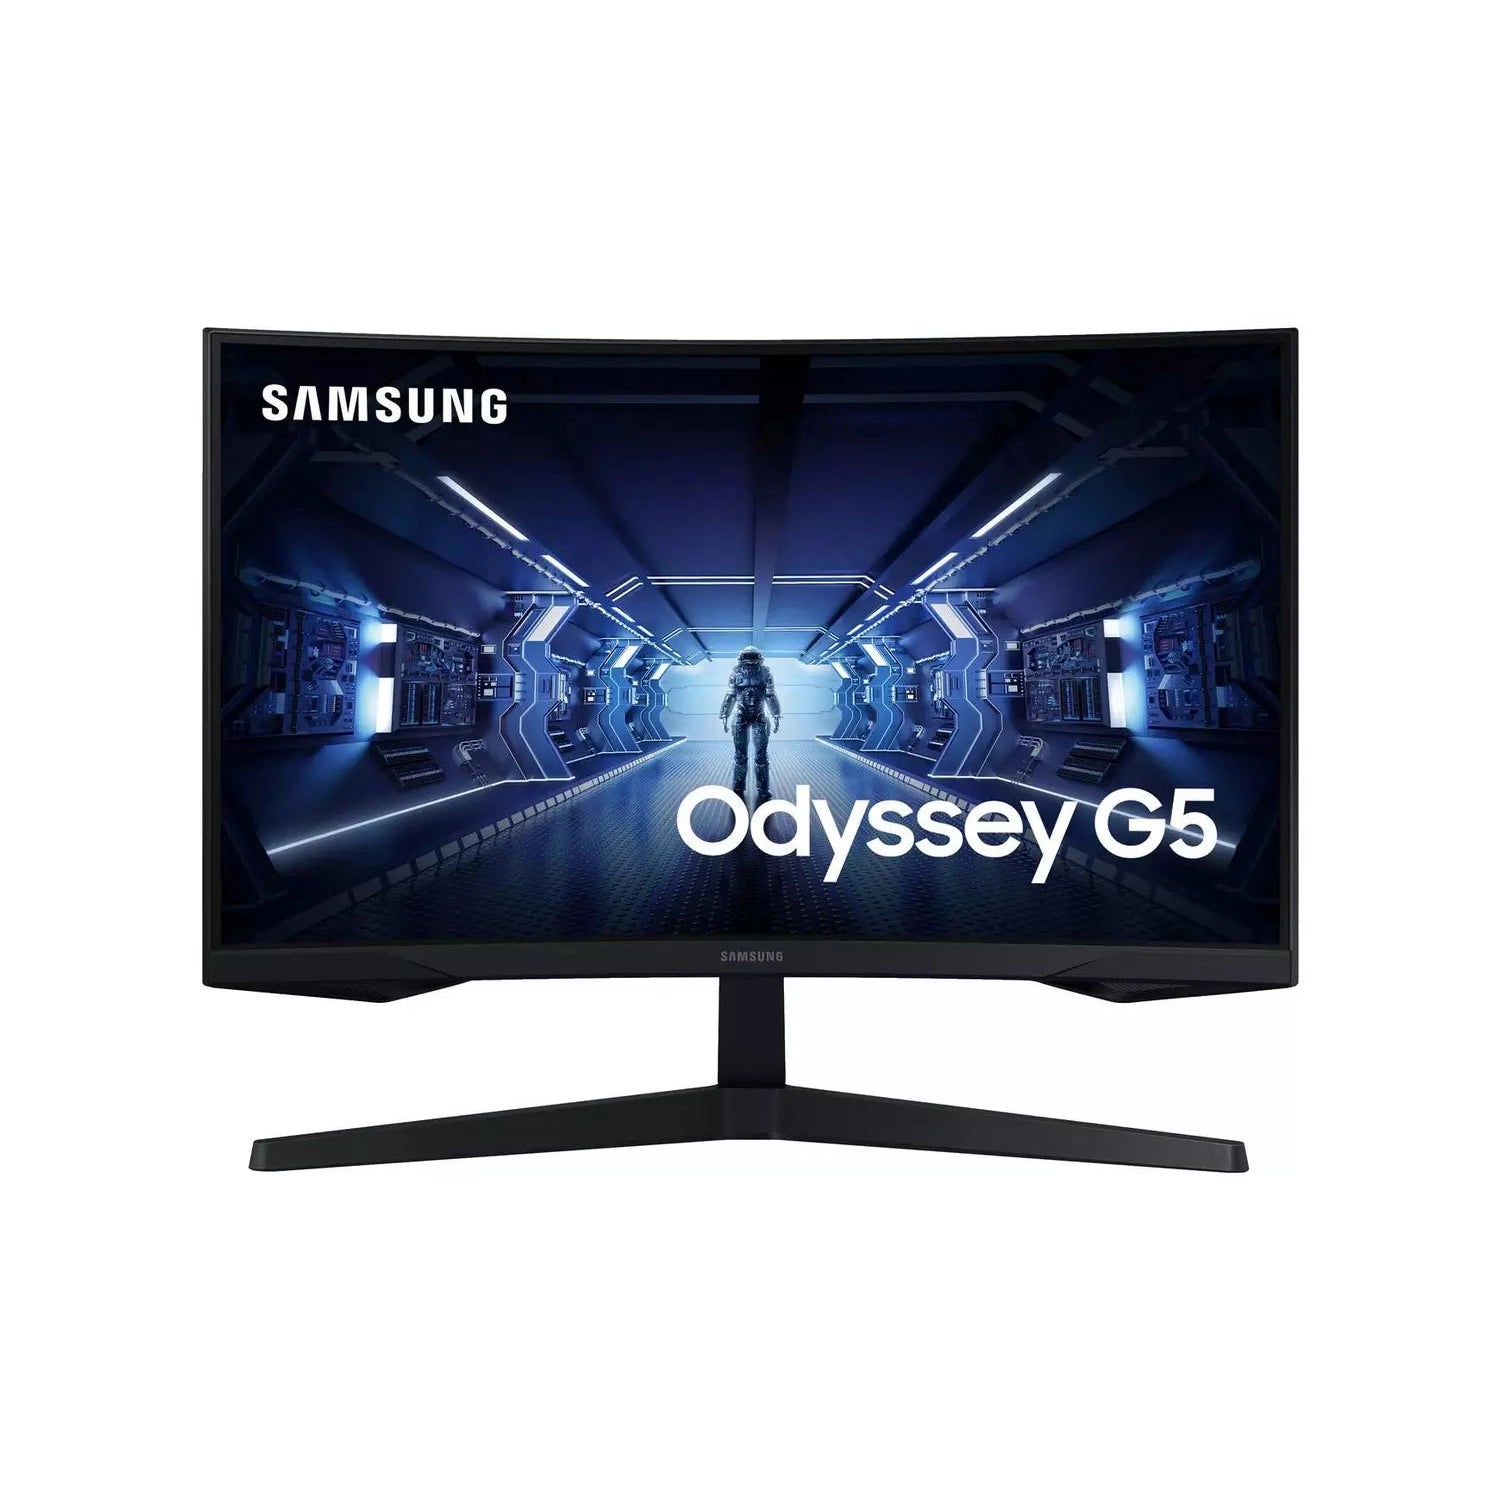 Samsung Odyssey G5 32 Inch WQHD Gaming Monitor C32G53TQWR - Refurbished Good